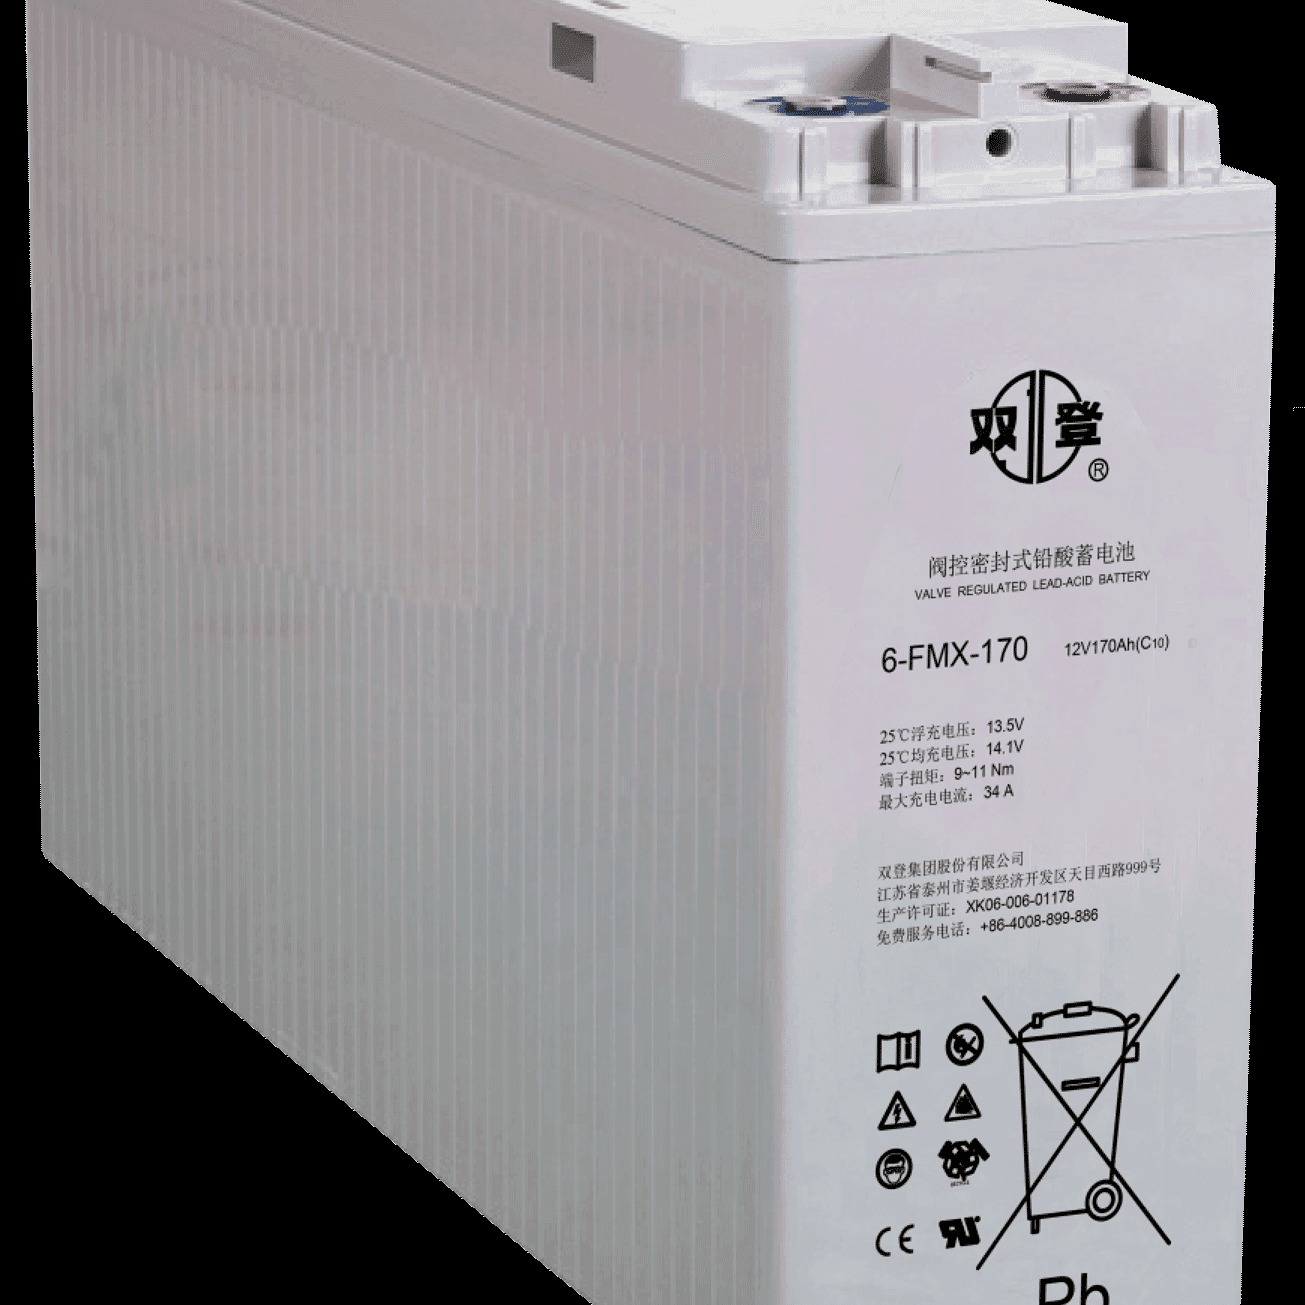 双登蓄电池6-FMX-170 狭长型前置端子蓄电池12V170AH 发电厂变电站控制系统专用 参数及价格